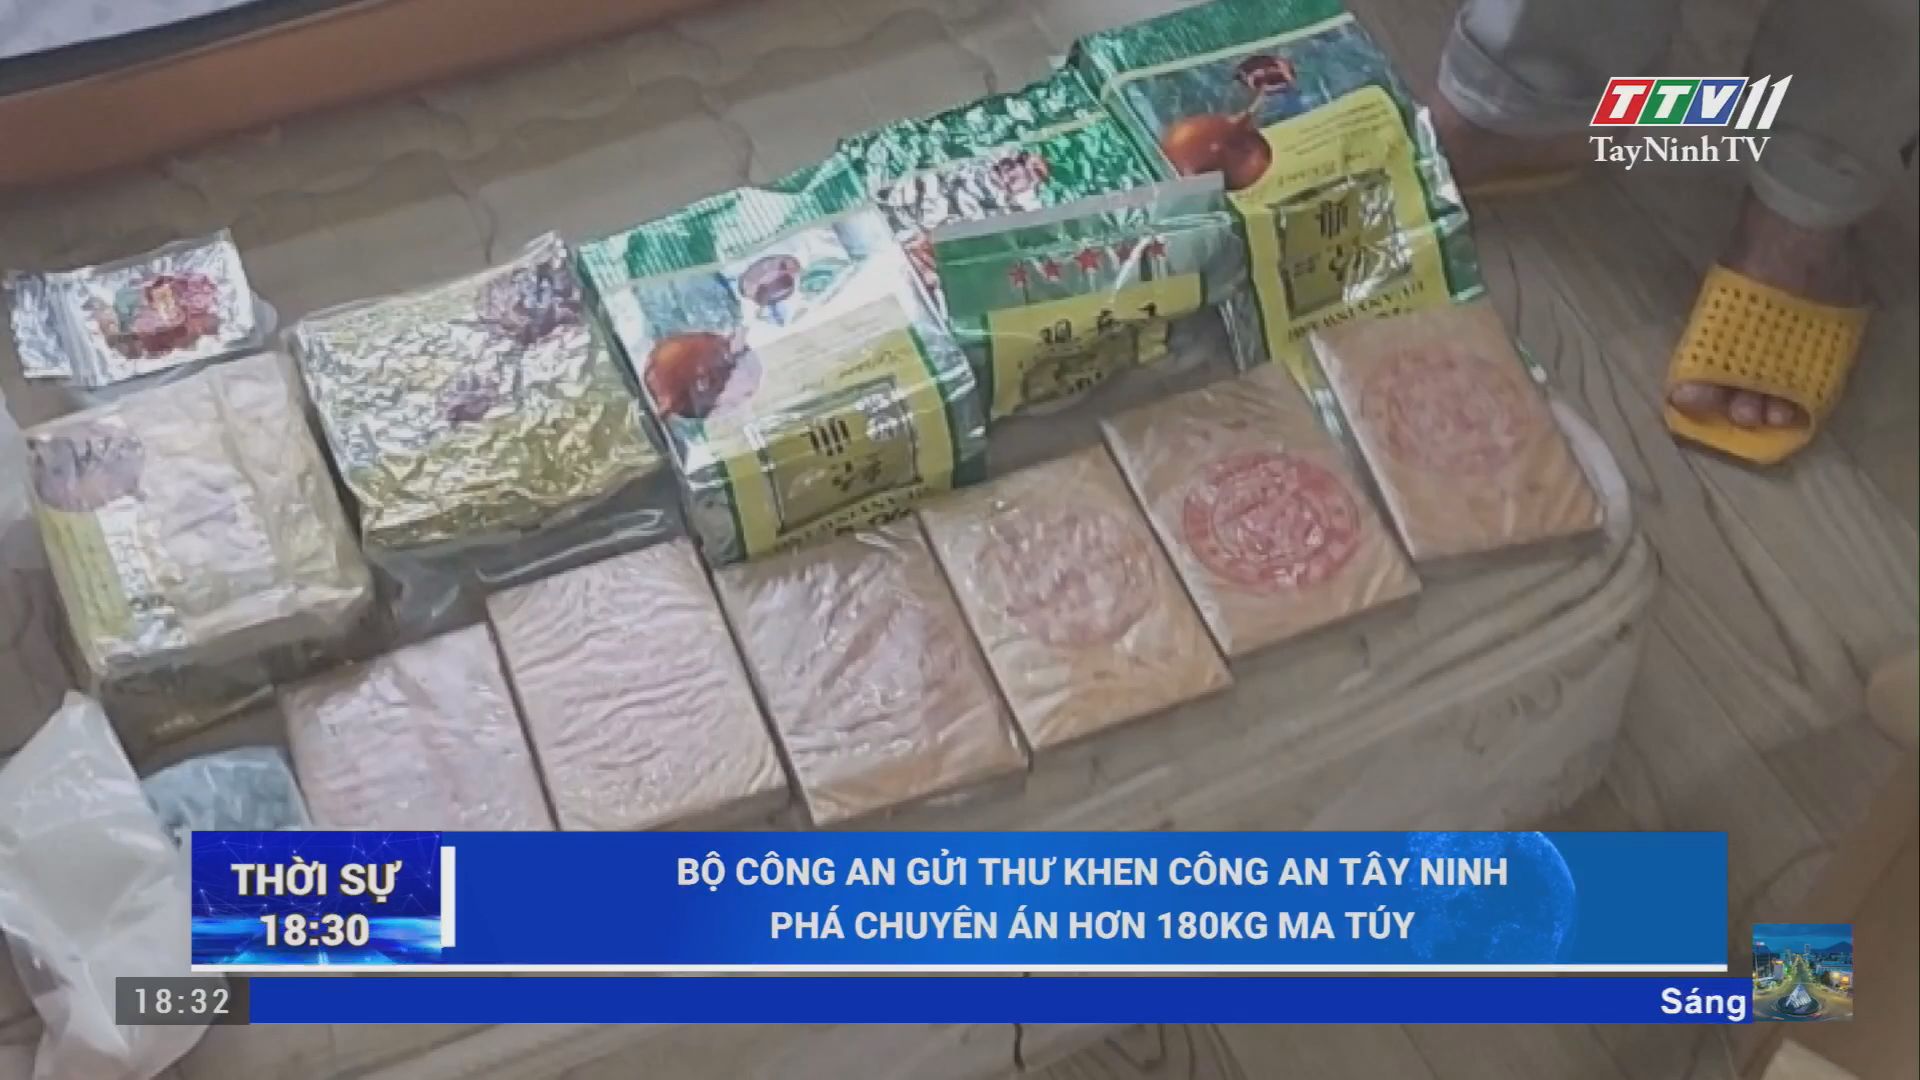 Bộ Công an gửi thư khen Công an Tây Ninh phá chuyên án hơn 180kg ma túy | AN NINH TRẬT TỰ | TayNinhTV